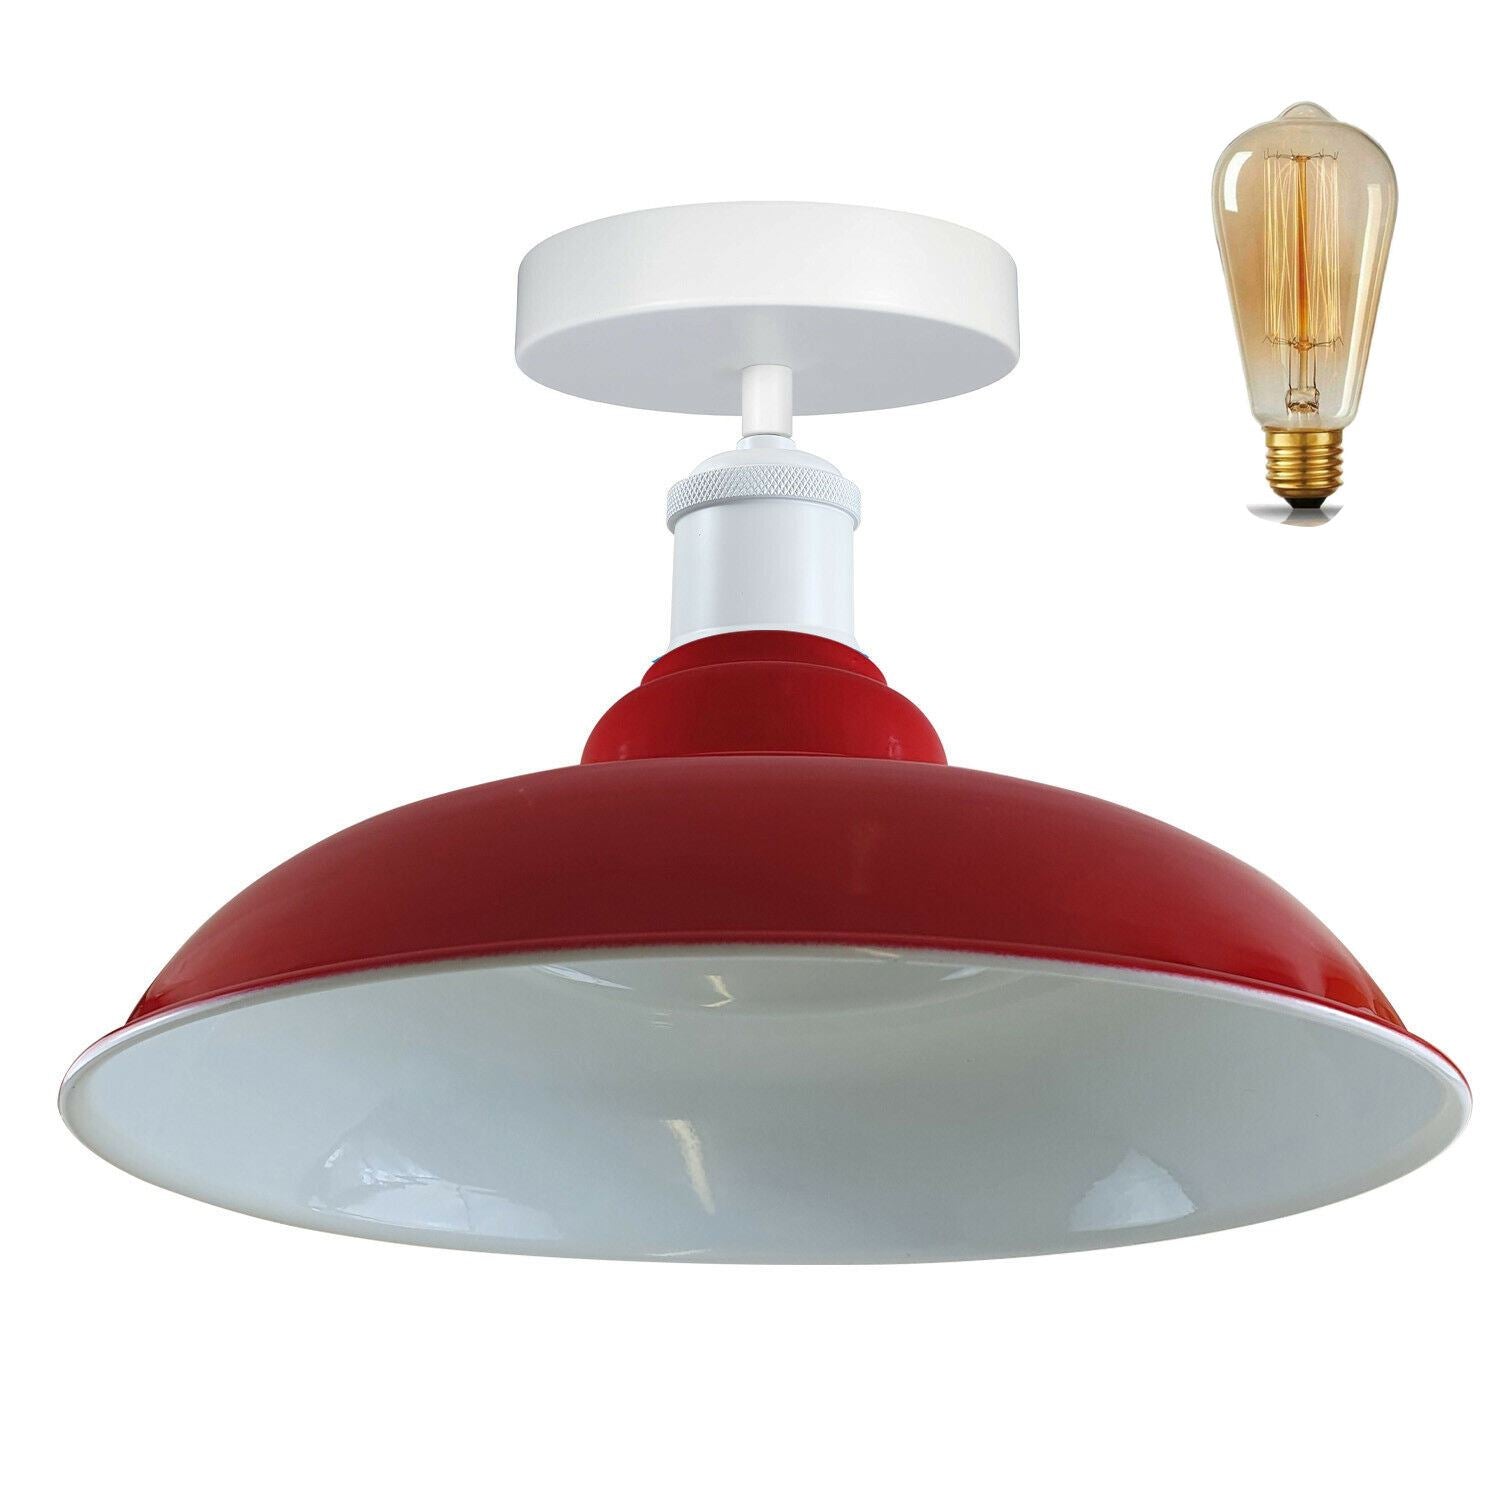 Modern Industrial Style Ceiling Light Fittings Metal Flush Mount Bowl Shape Shade Indoor Lighting, E27 Base~1192 - LEDSone UK Ltd